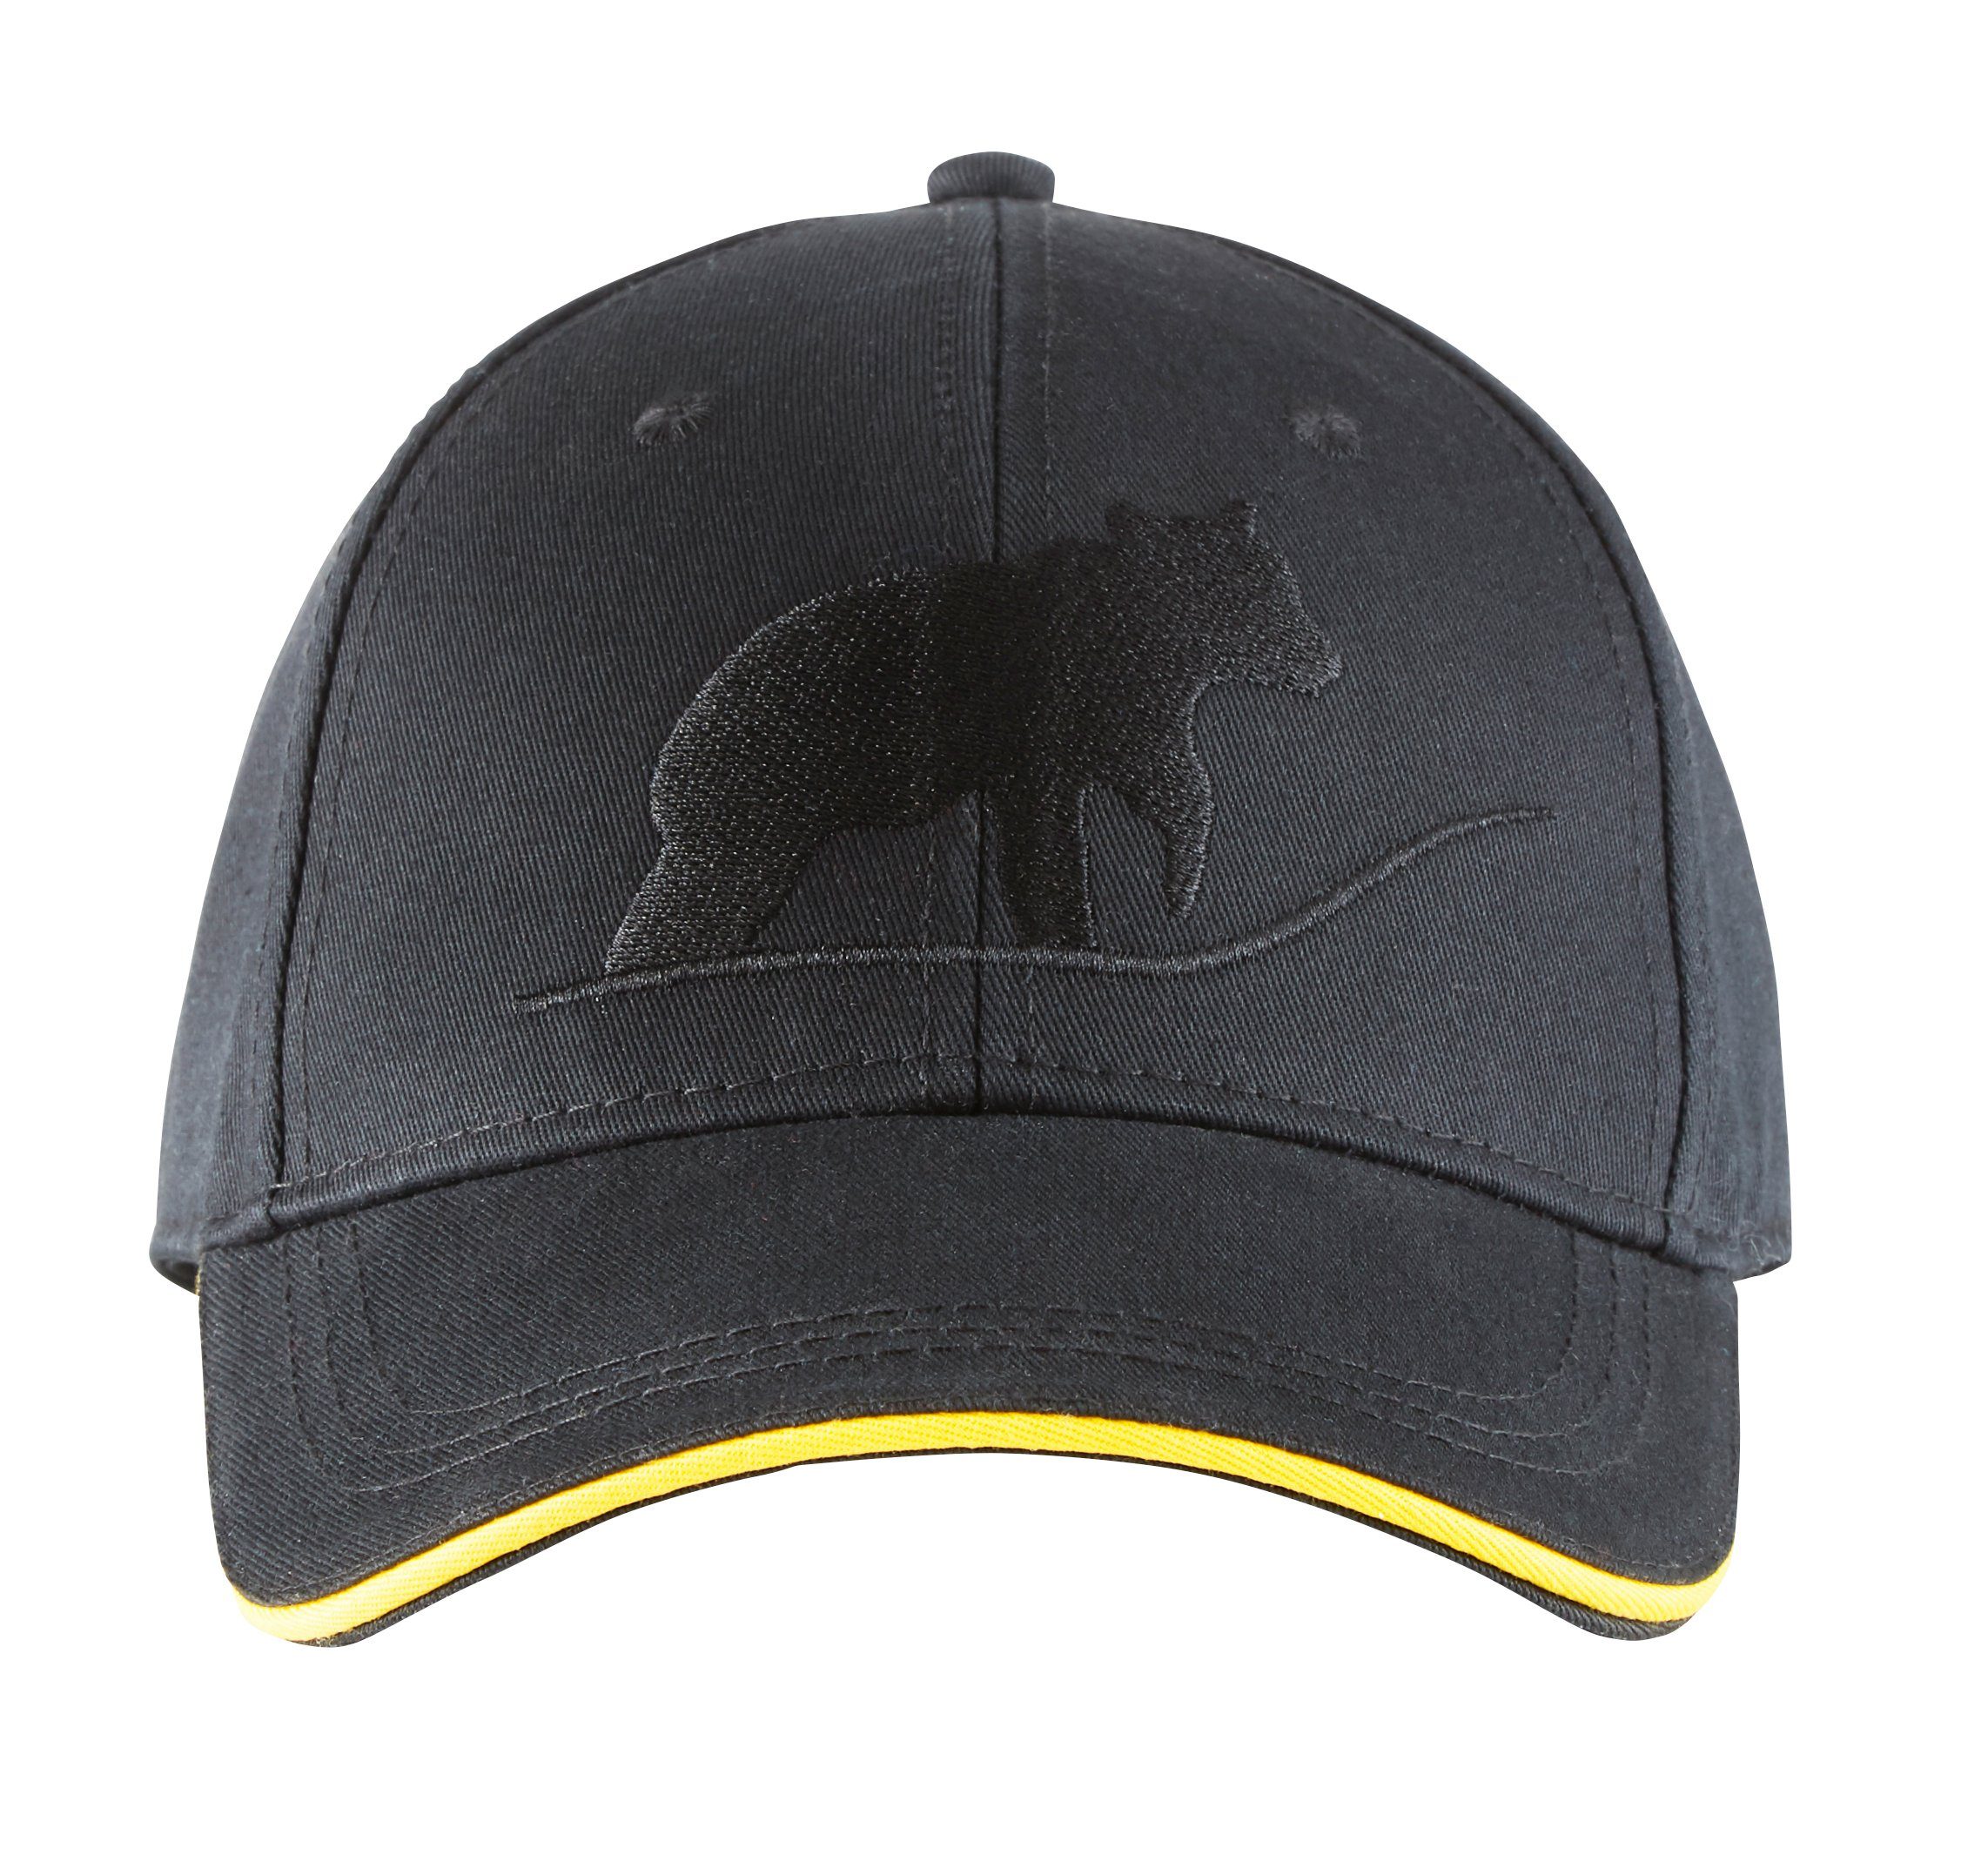 Northern Country Snapback Cap größenverstellbar, schützt beim Arbeiten vor Sonne Black Beauty | Snapback Caps